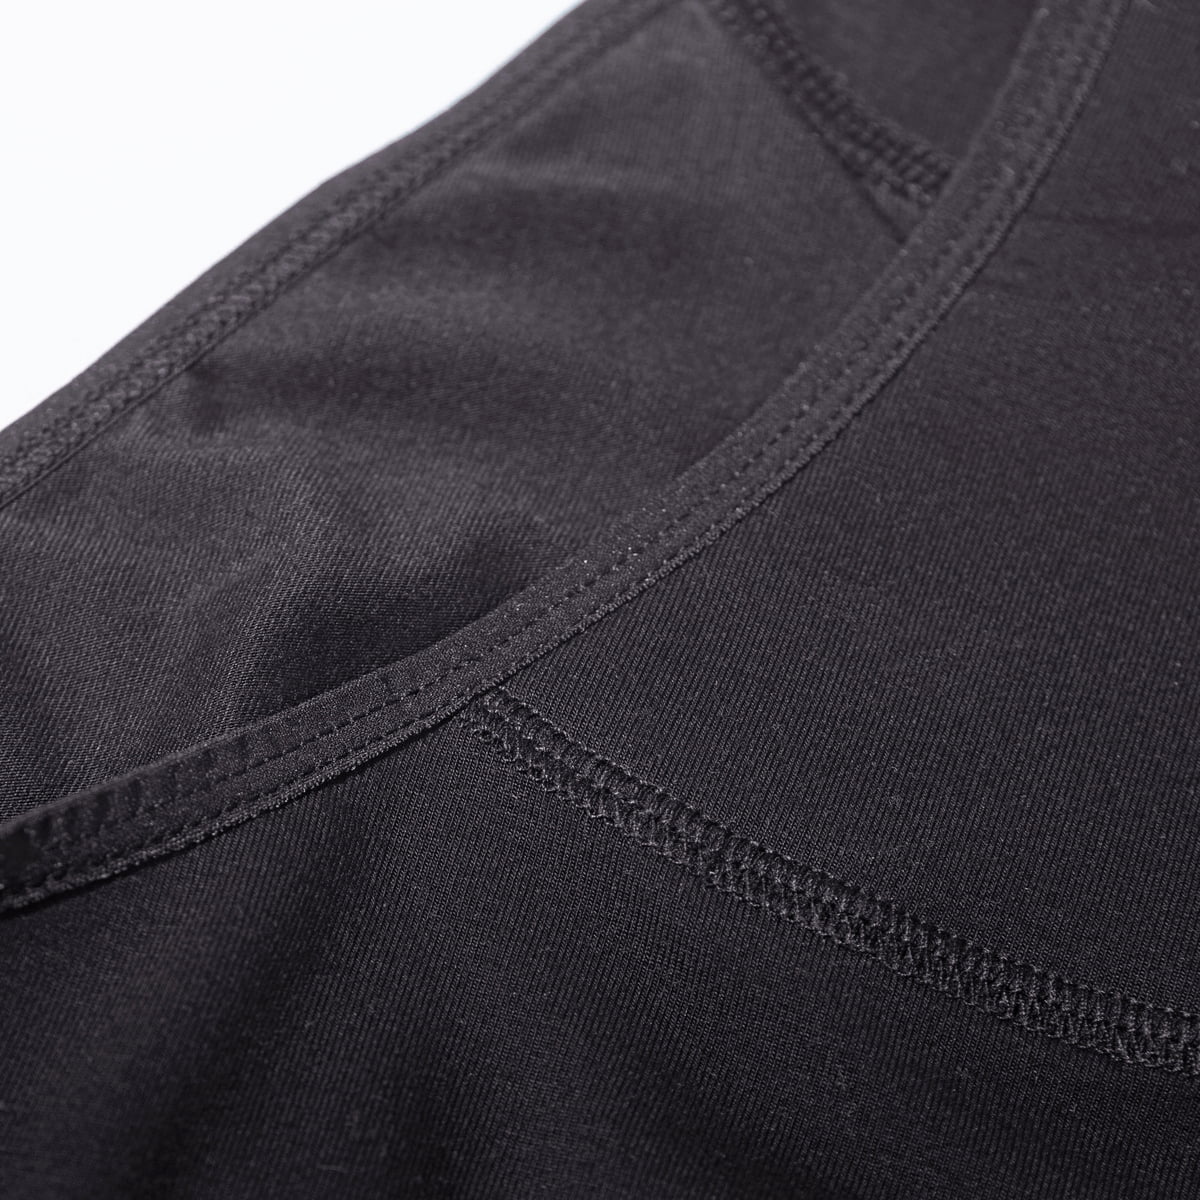 Imse Period Underwear Medium Flow - Black - Ecco Verde Online Shop